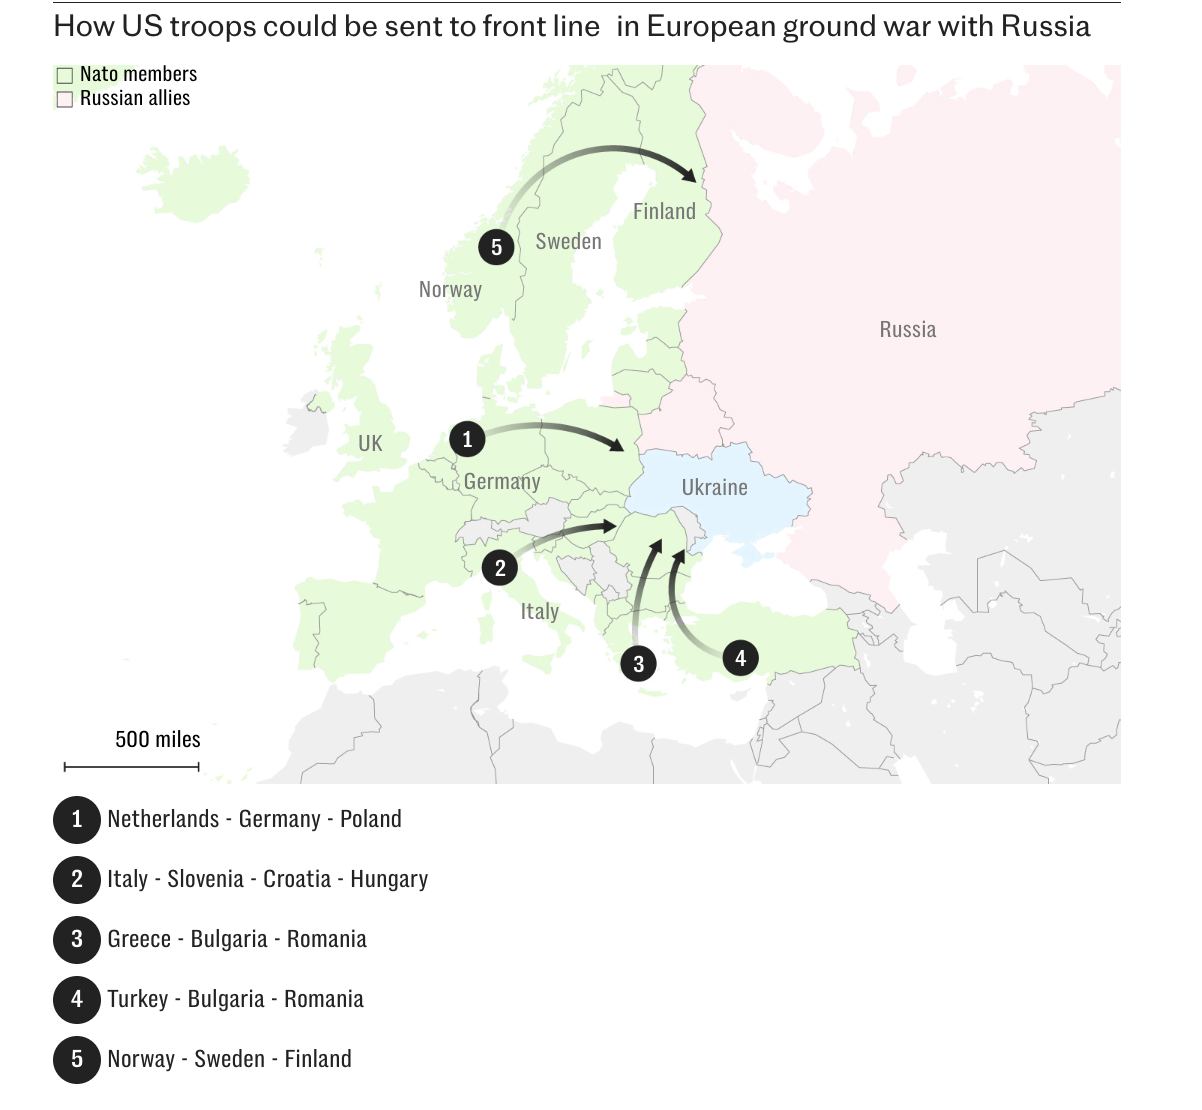 НАТО готовит план переброски войск к границе на случай войны с Россией